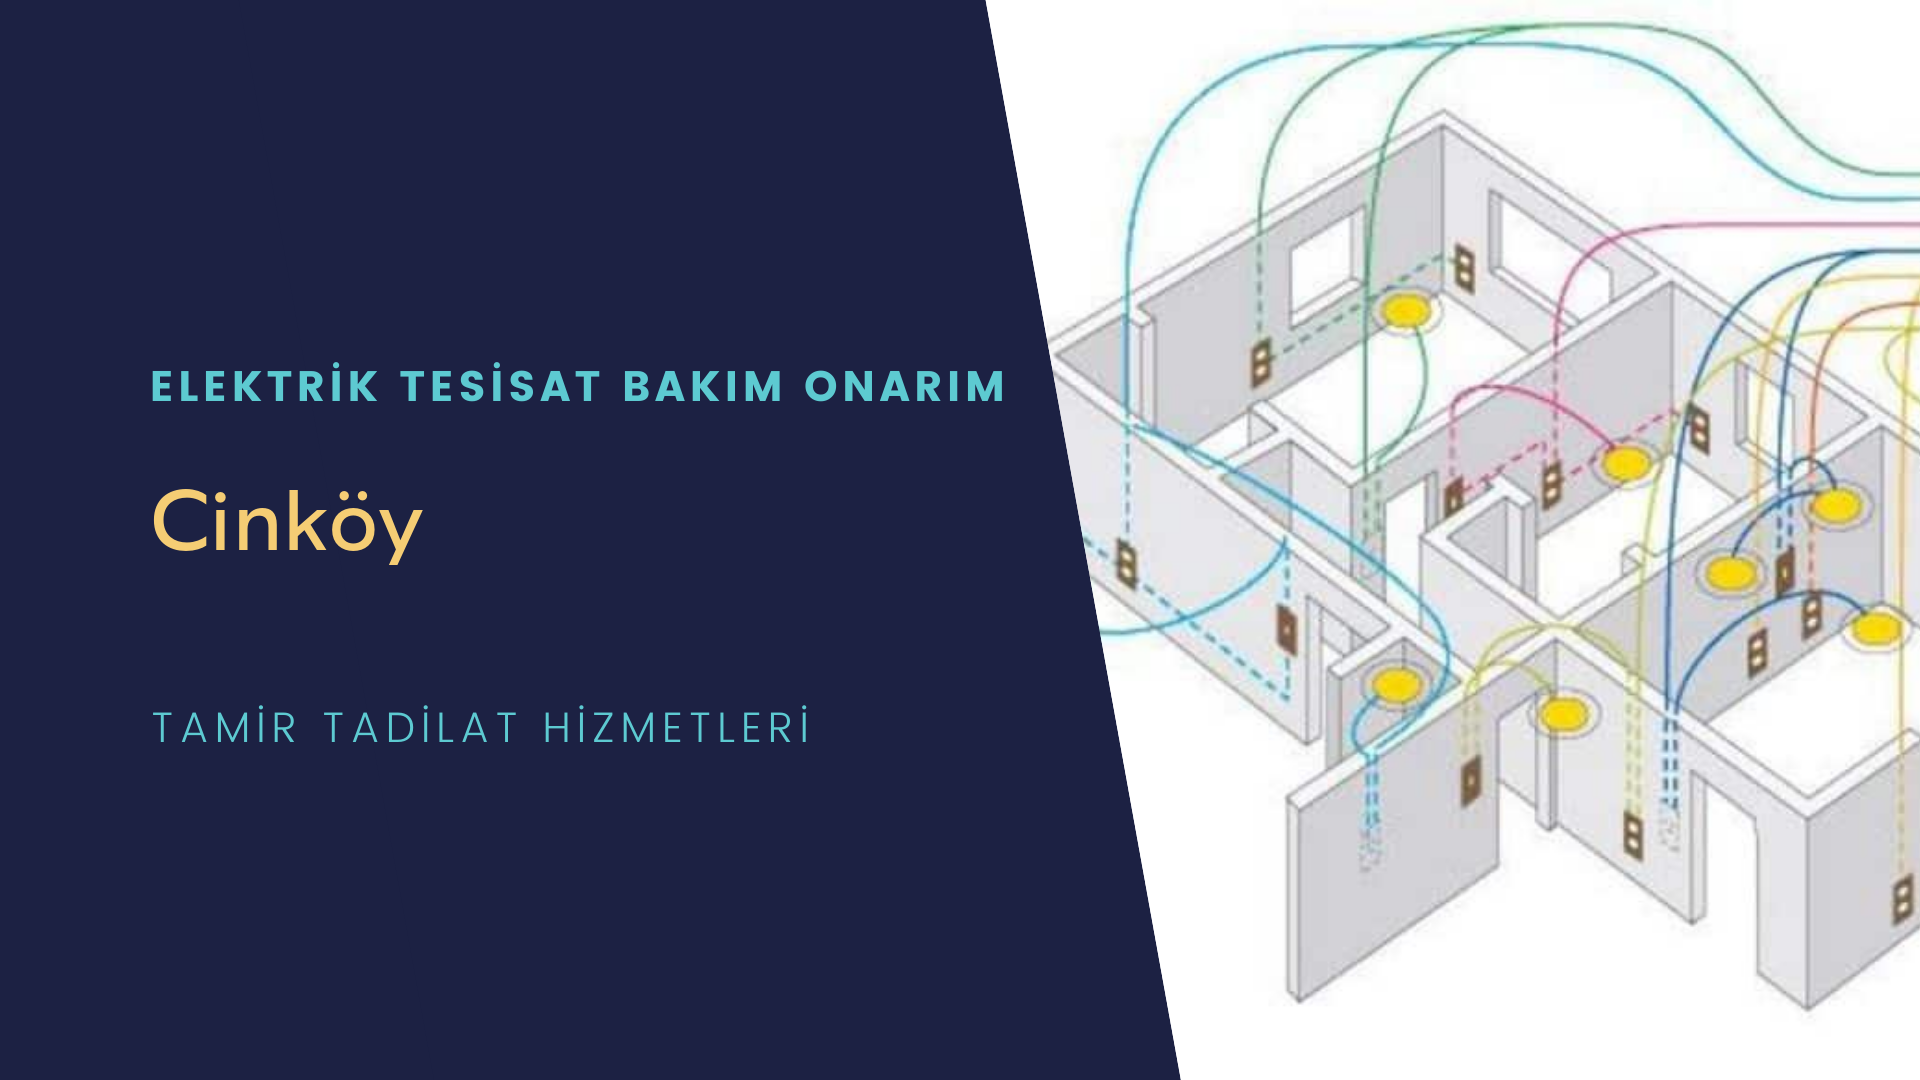 Cinköy'de elektrik tesisatı ustalarımı arıyorsunuz doğru adrestenizi Cinköy elektrik tesisatı ustalarımız 7/24 sizlere hizmet vermekten mutluluk duyar.